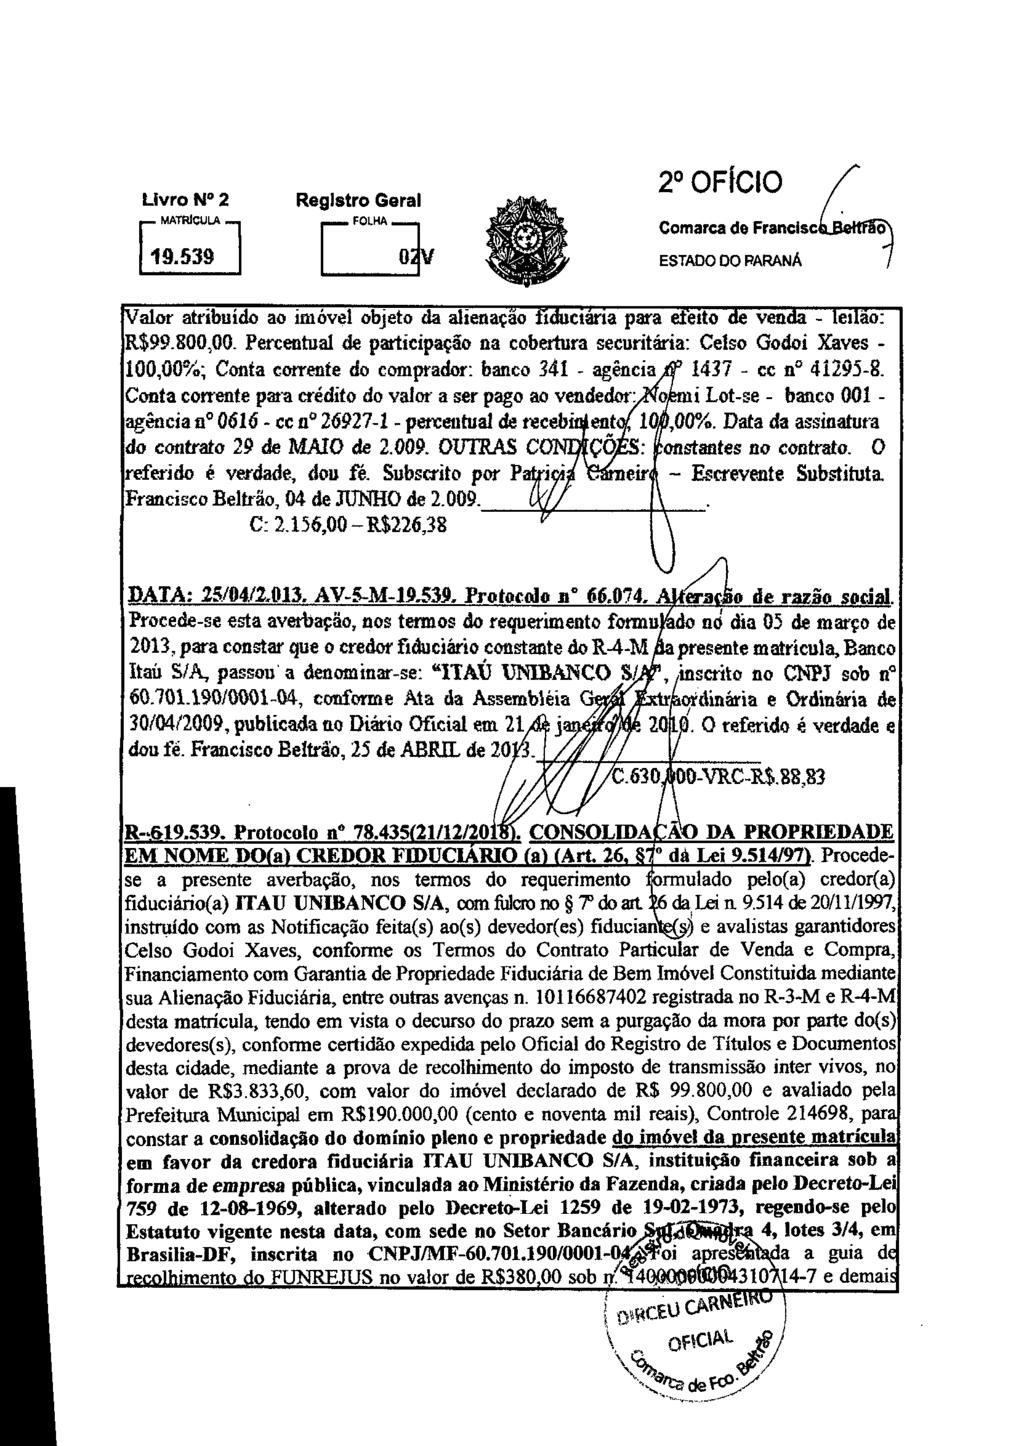 Livro 14 2 [19.539 1 0v 2 OFICIO Comarca de Francisc Valor atribuído ao imóvel objeto da alienação fiduciária para deito de venda - leilão: R$99.800,00.